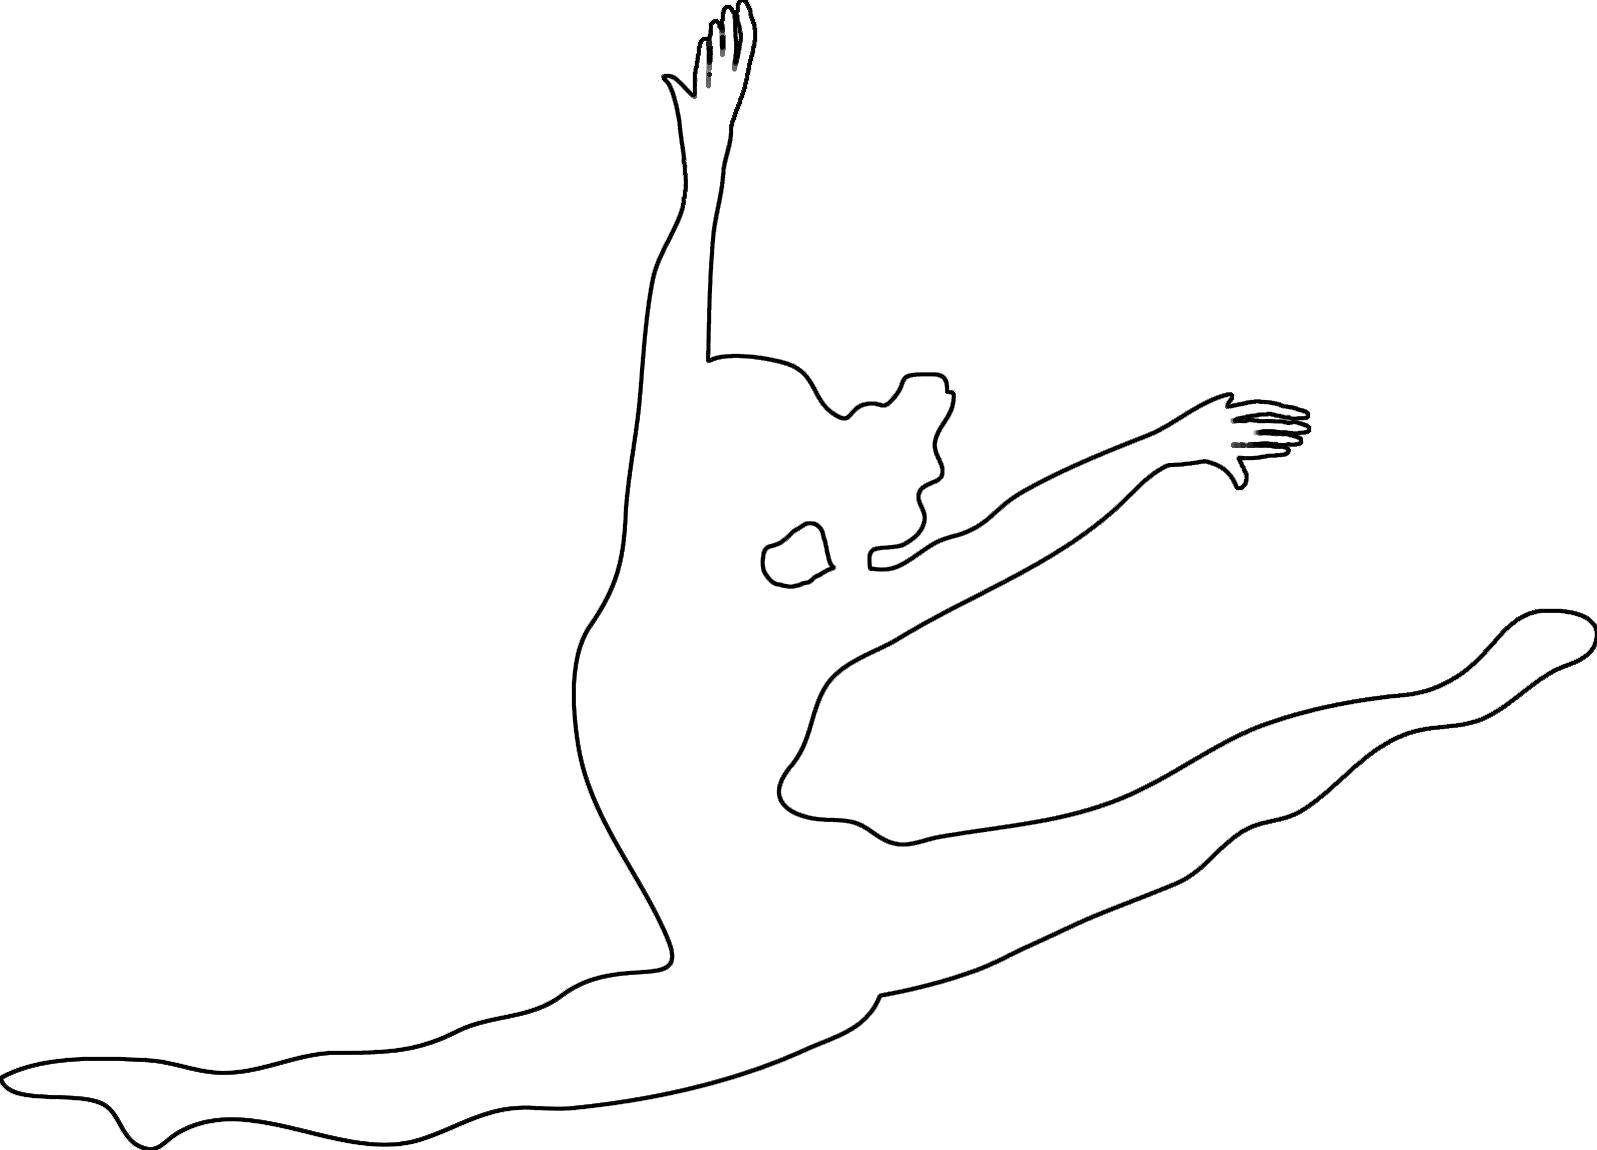 Название: Раскраска Раскраски шаблоны балерин балерина в полете контур для вырезания из бумаги. Категория: Шаблон. Теги: Шаблон.